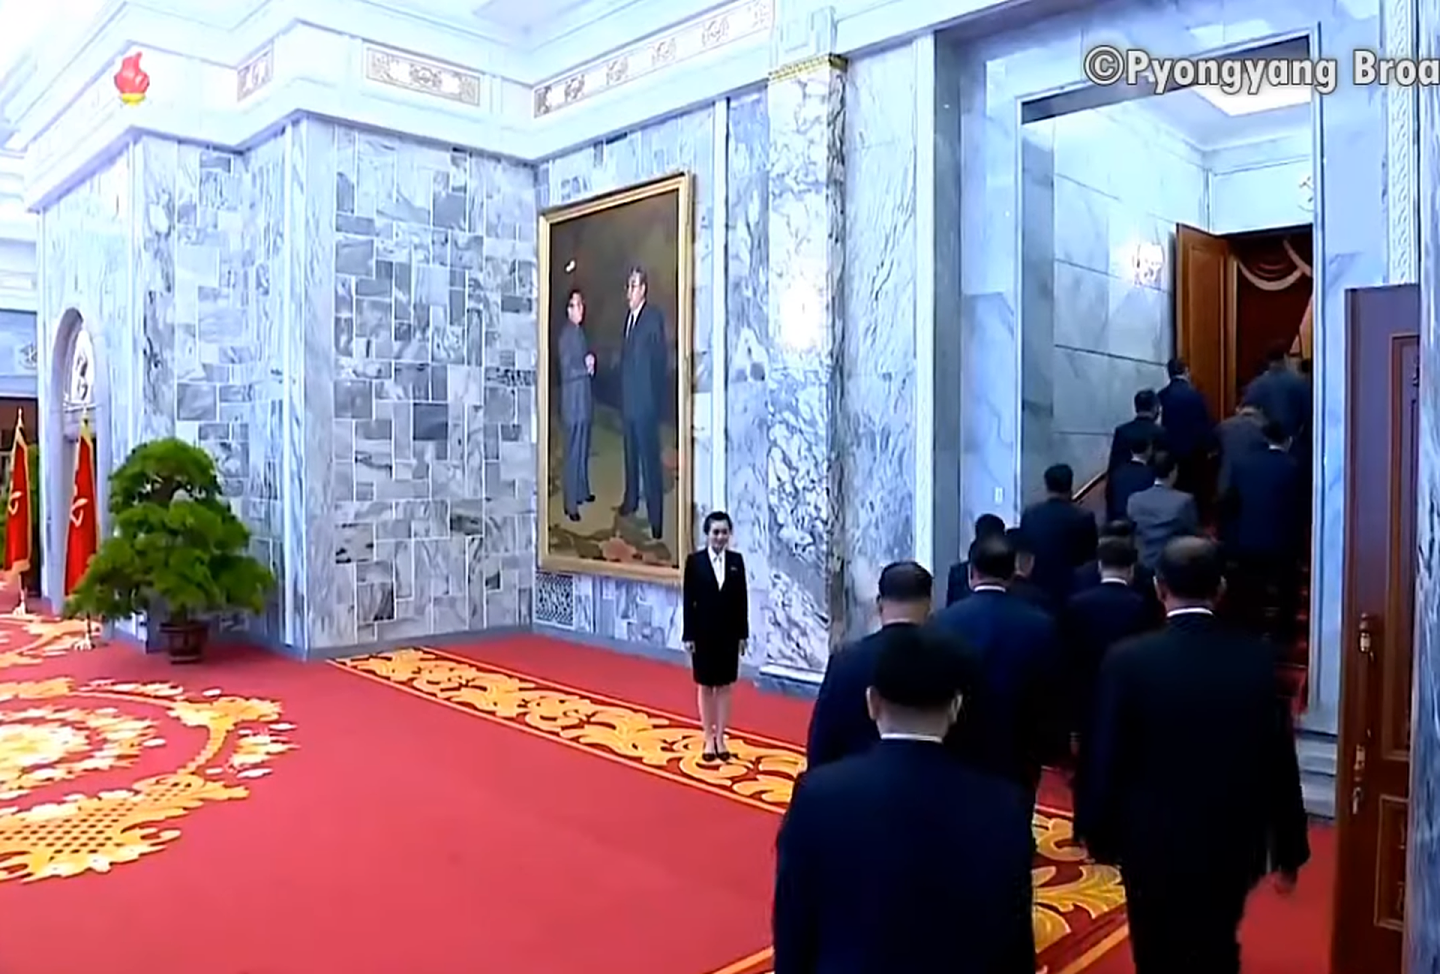 现场画面显示，一名工作人员迎接参加会议人员。（朝鲜中央电视台视频截图）